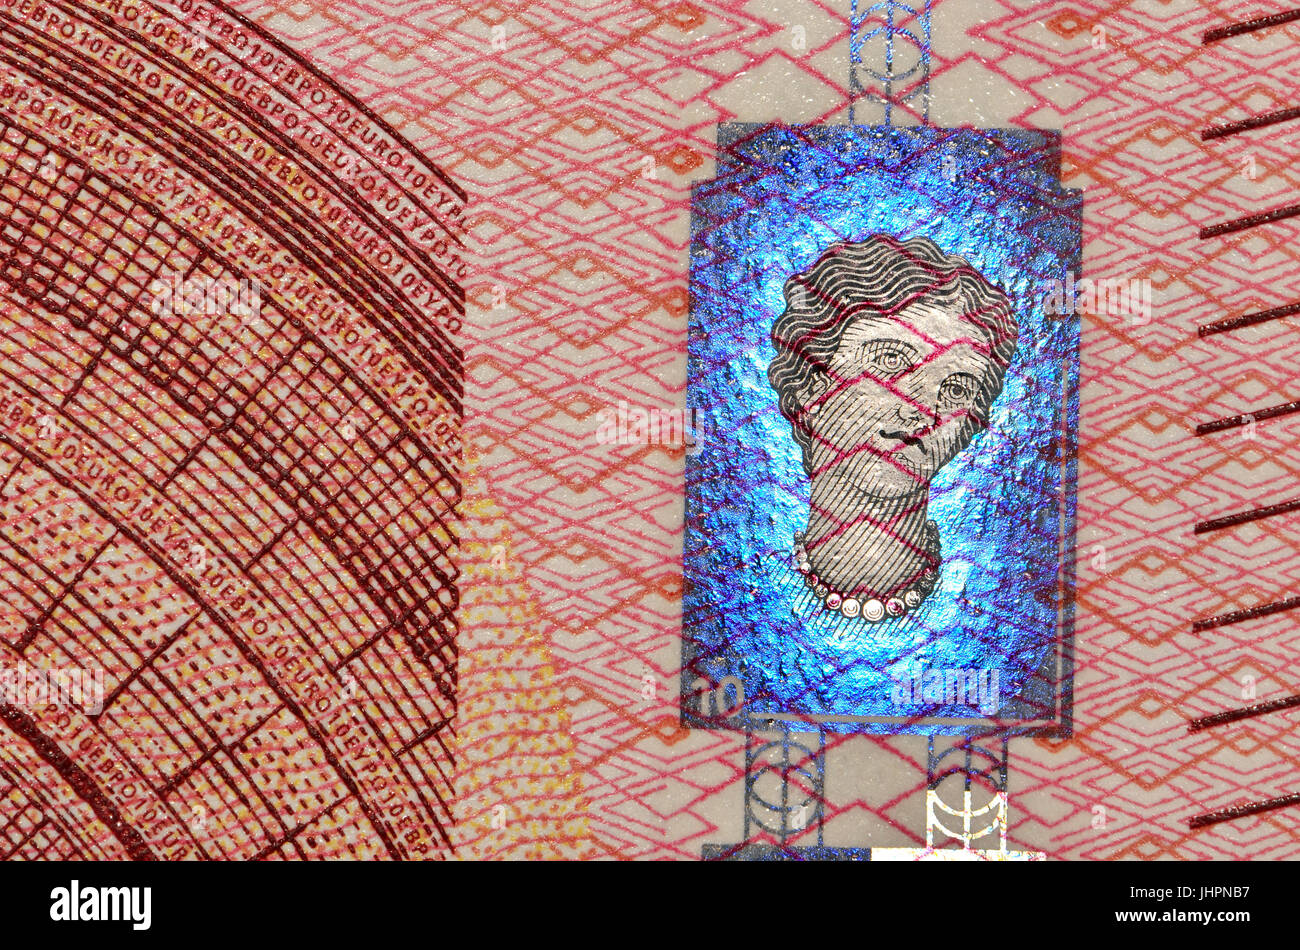 10 euros Détail montrant des caractéristiques de sécurité anti-contrefaçon - nouvelle série "Europa", hologramme Banque D'Images